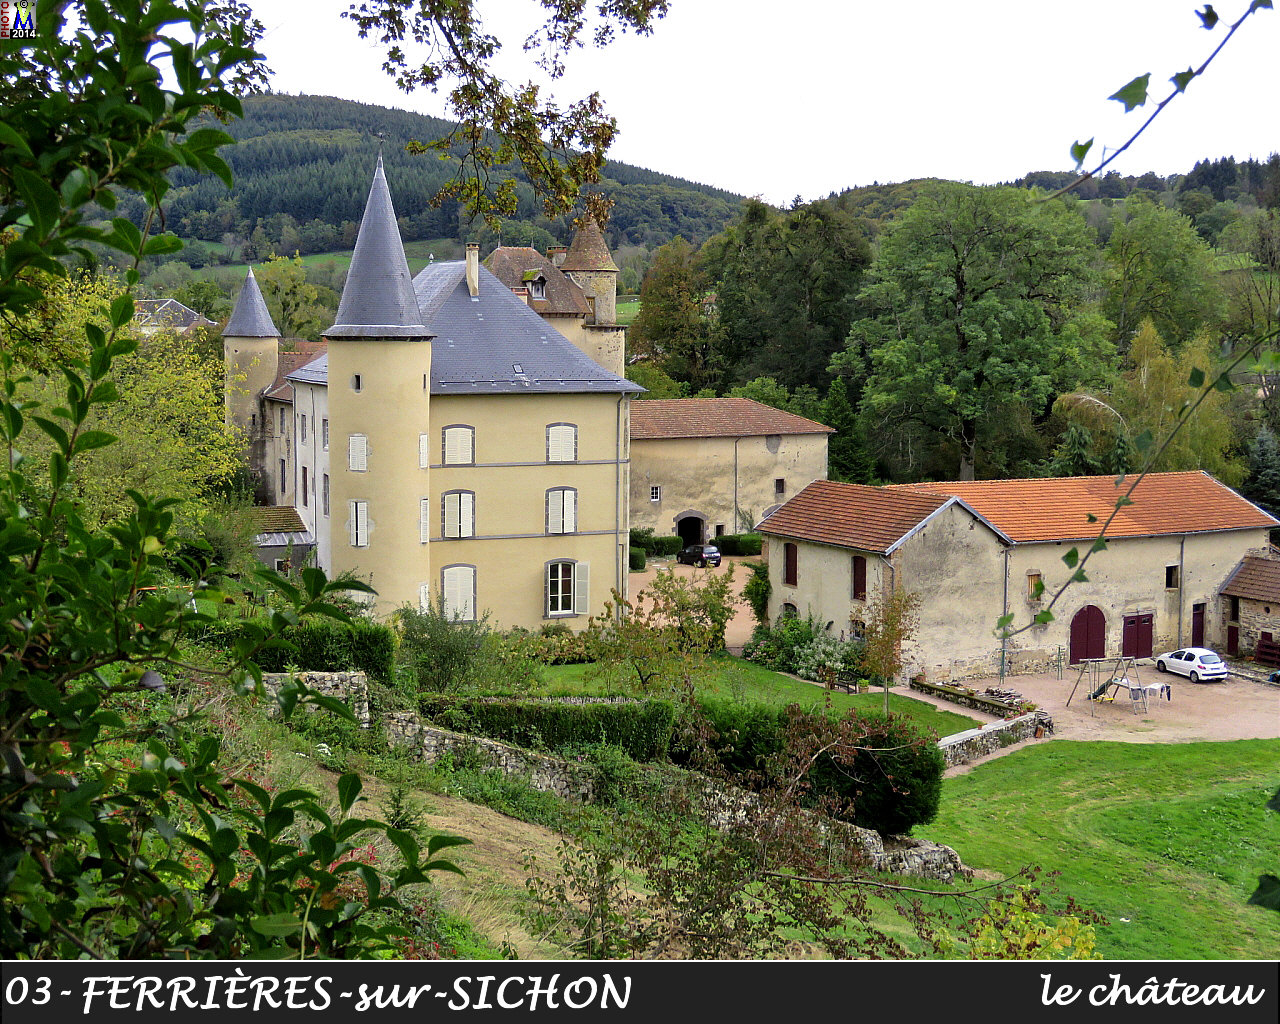 03FERRIERES-SICHON_chateau_100.jpg